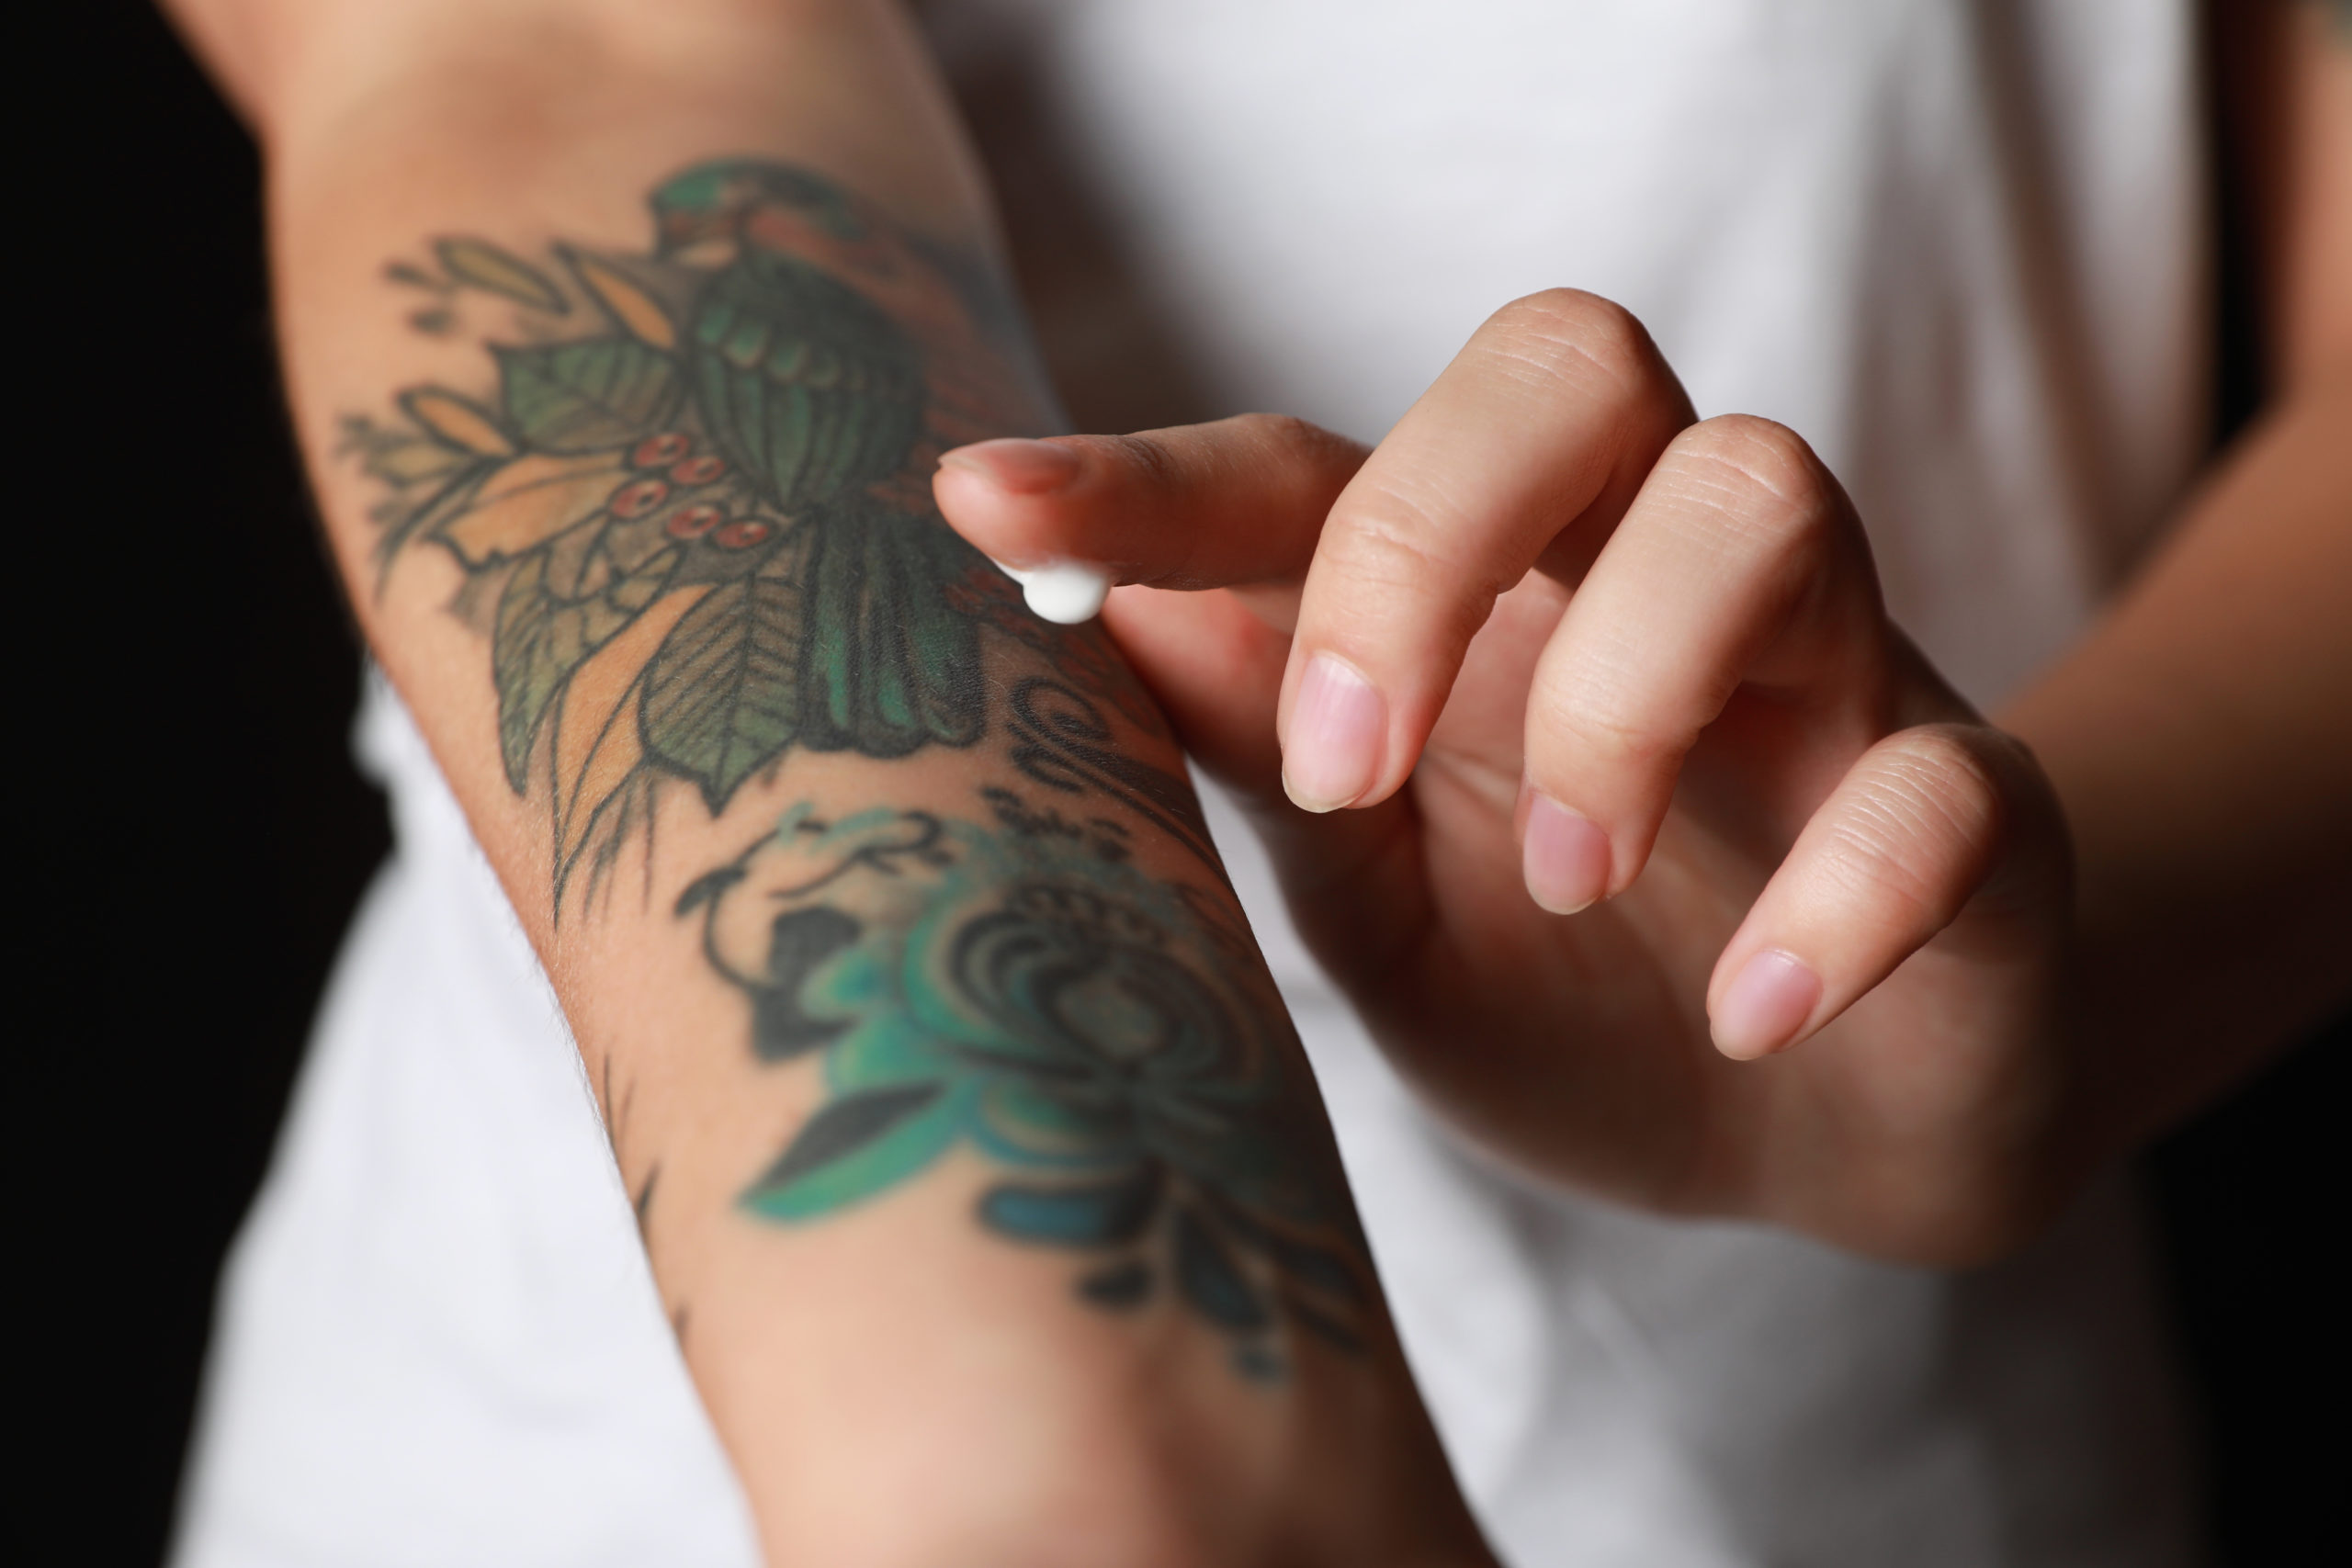 Come si cura un tatuaggio? I consigli per proteggere la pelle - Farmae  Magazine